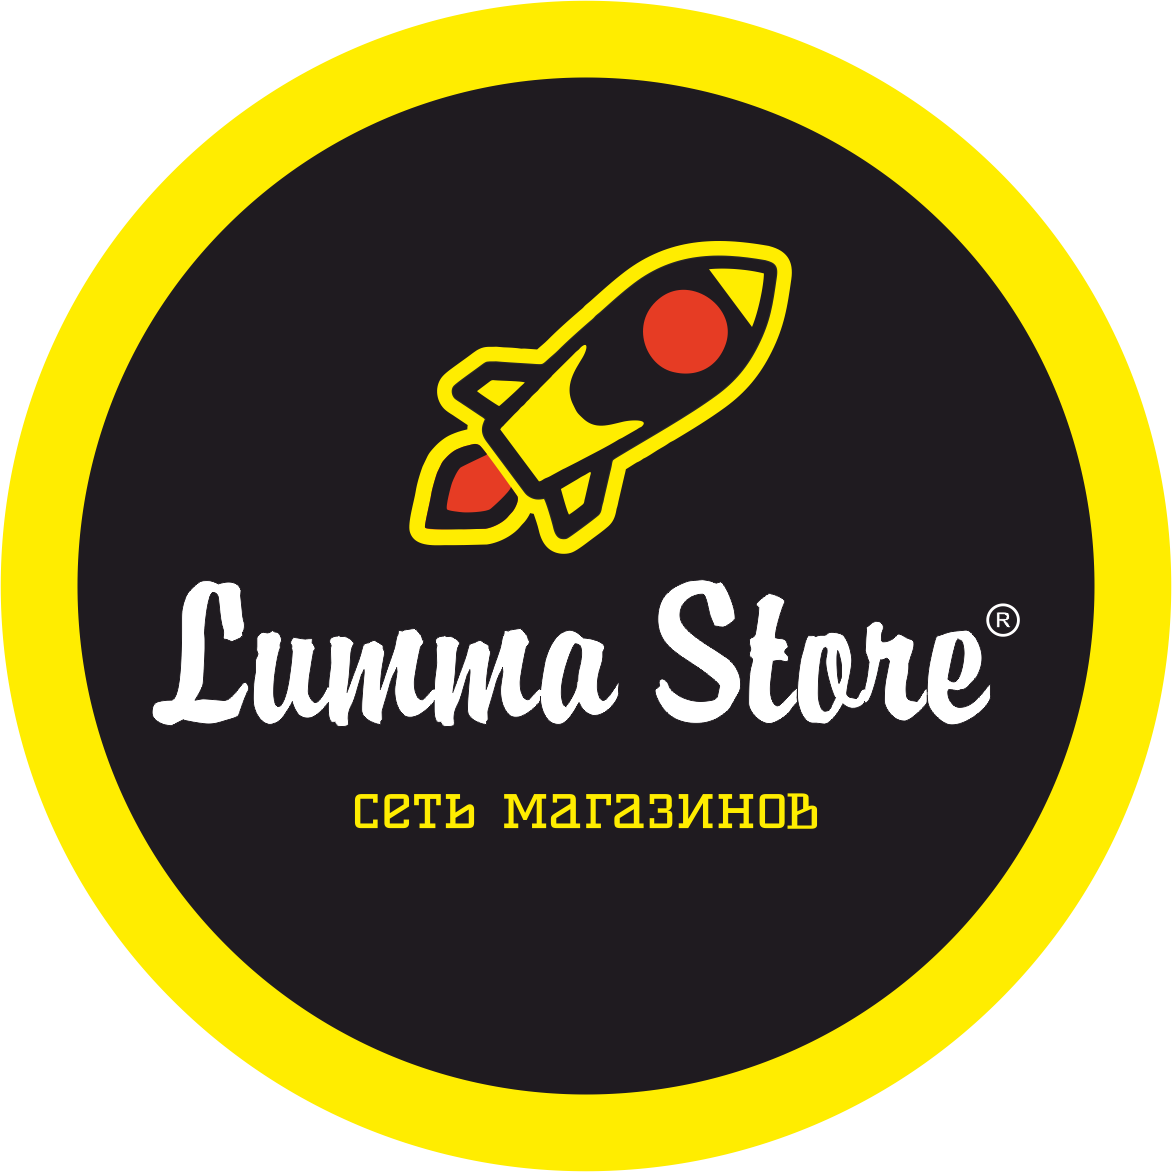 Lumma store. Lumma Store Екатеринбург. Эмблема магазина Lumma stor. Lumma Store Пермь.